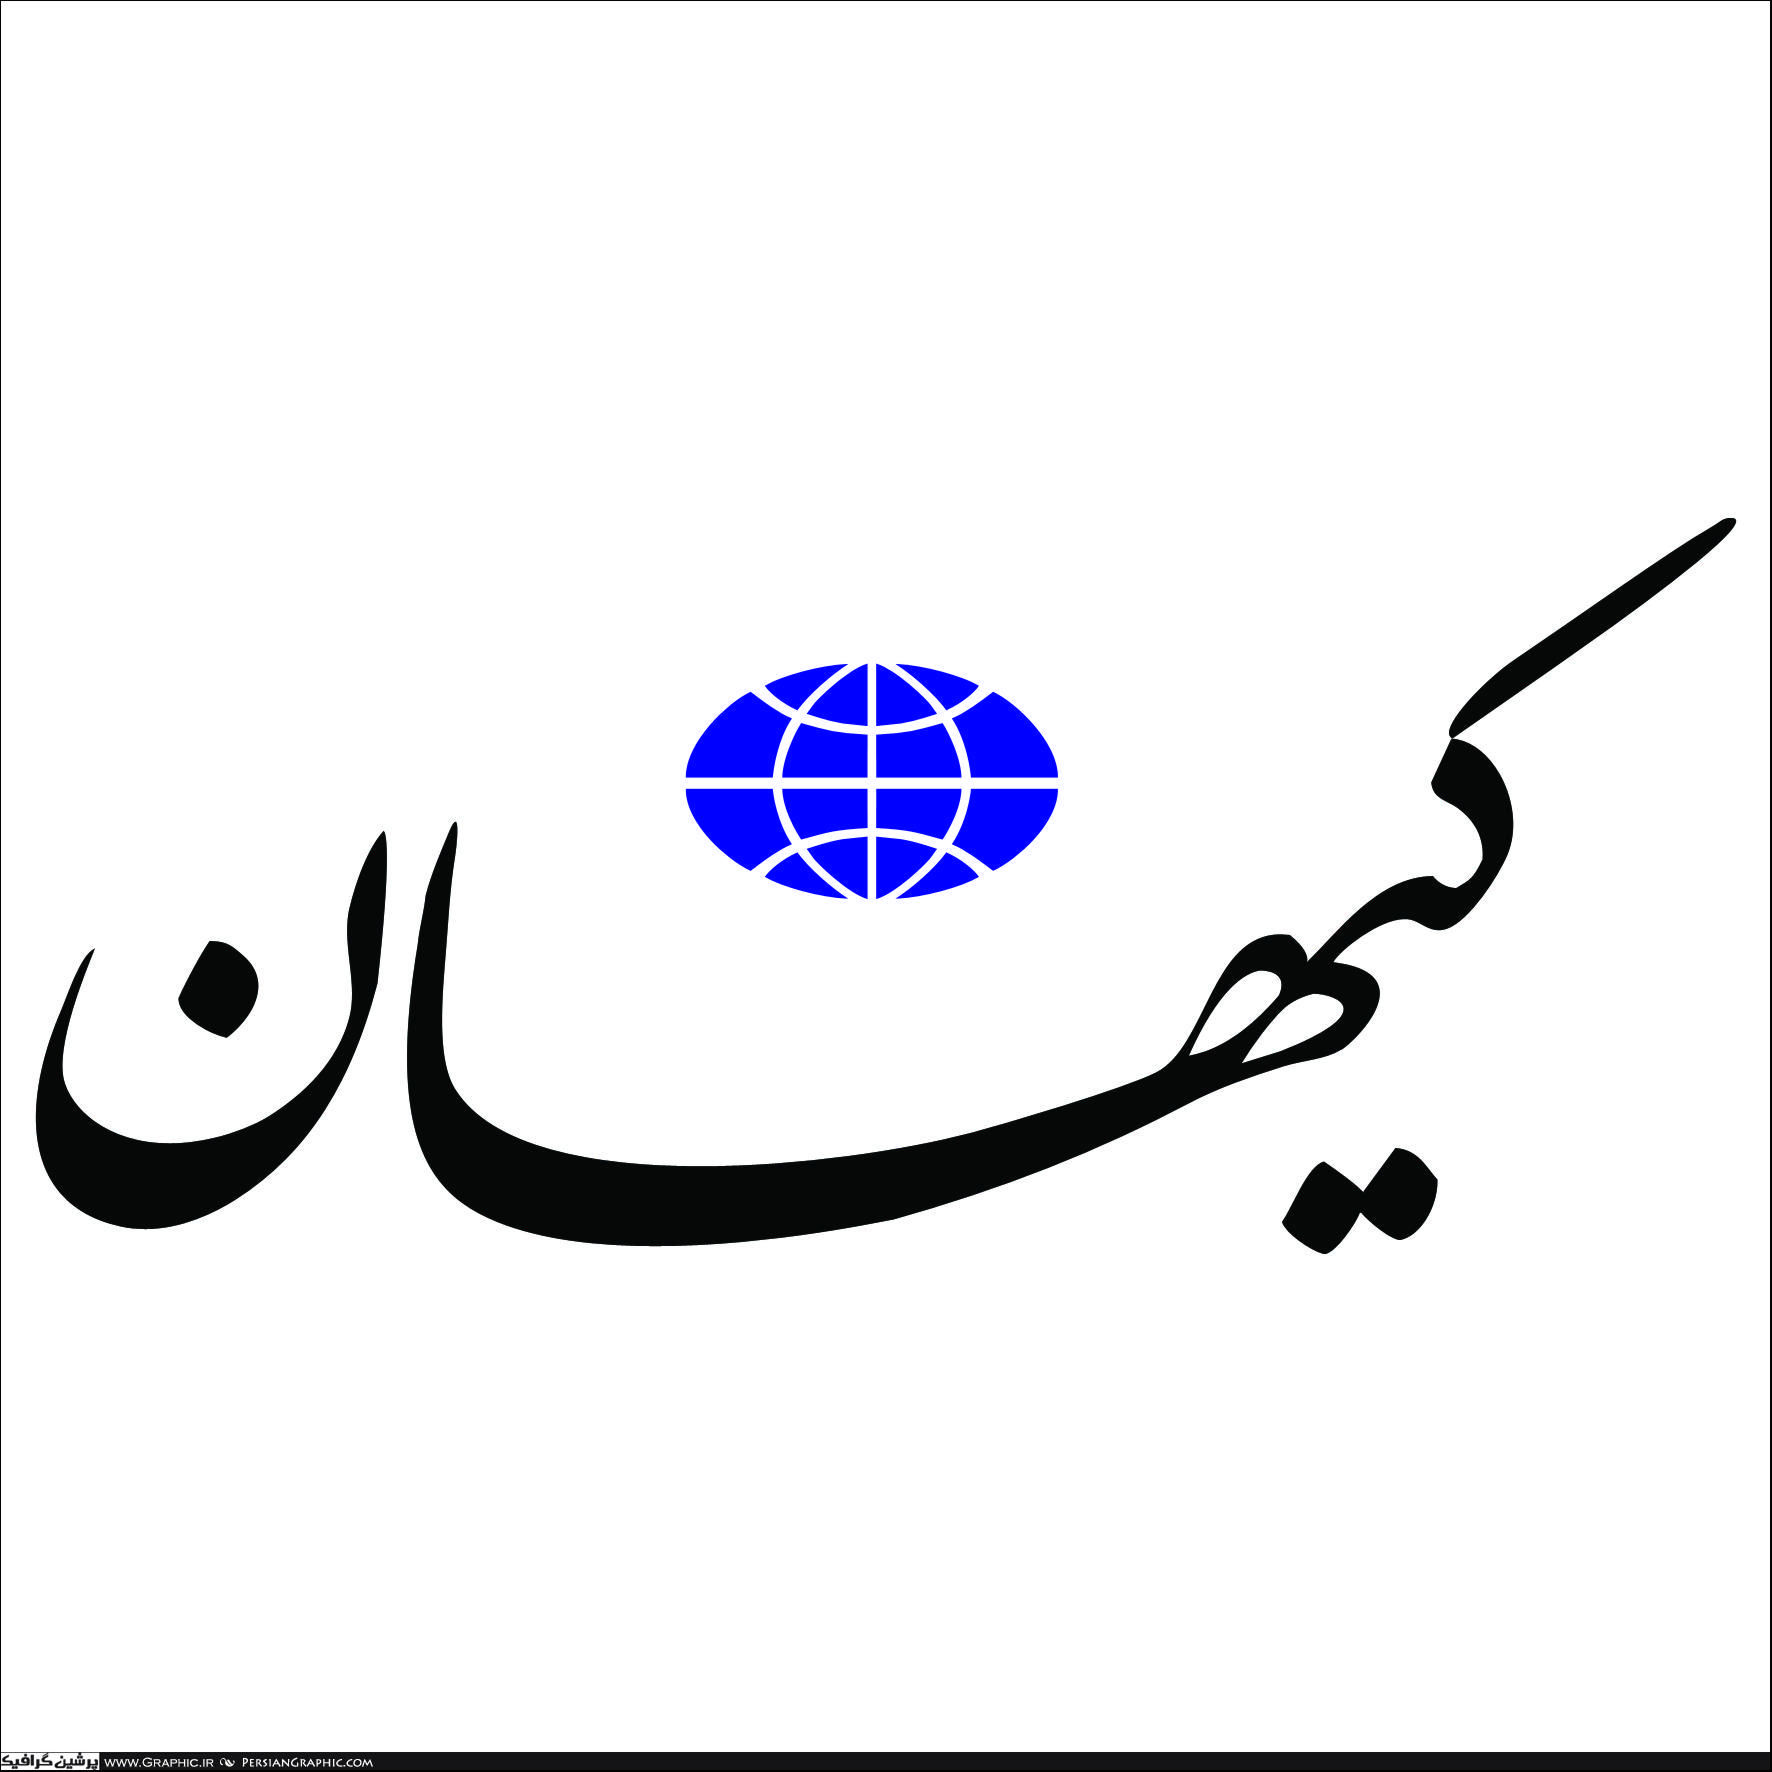 حمله کیهان به اصلاح طلبان: از نامه لاریجانی حمایت می کنید چون همتی رای نیاورد!